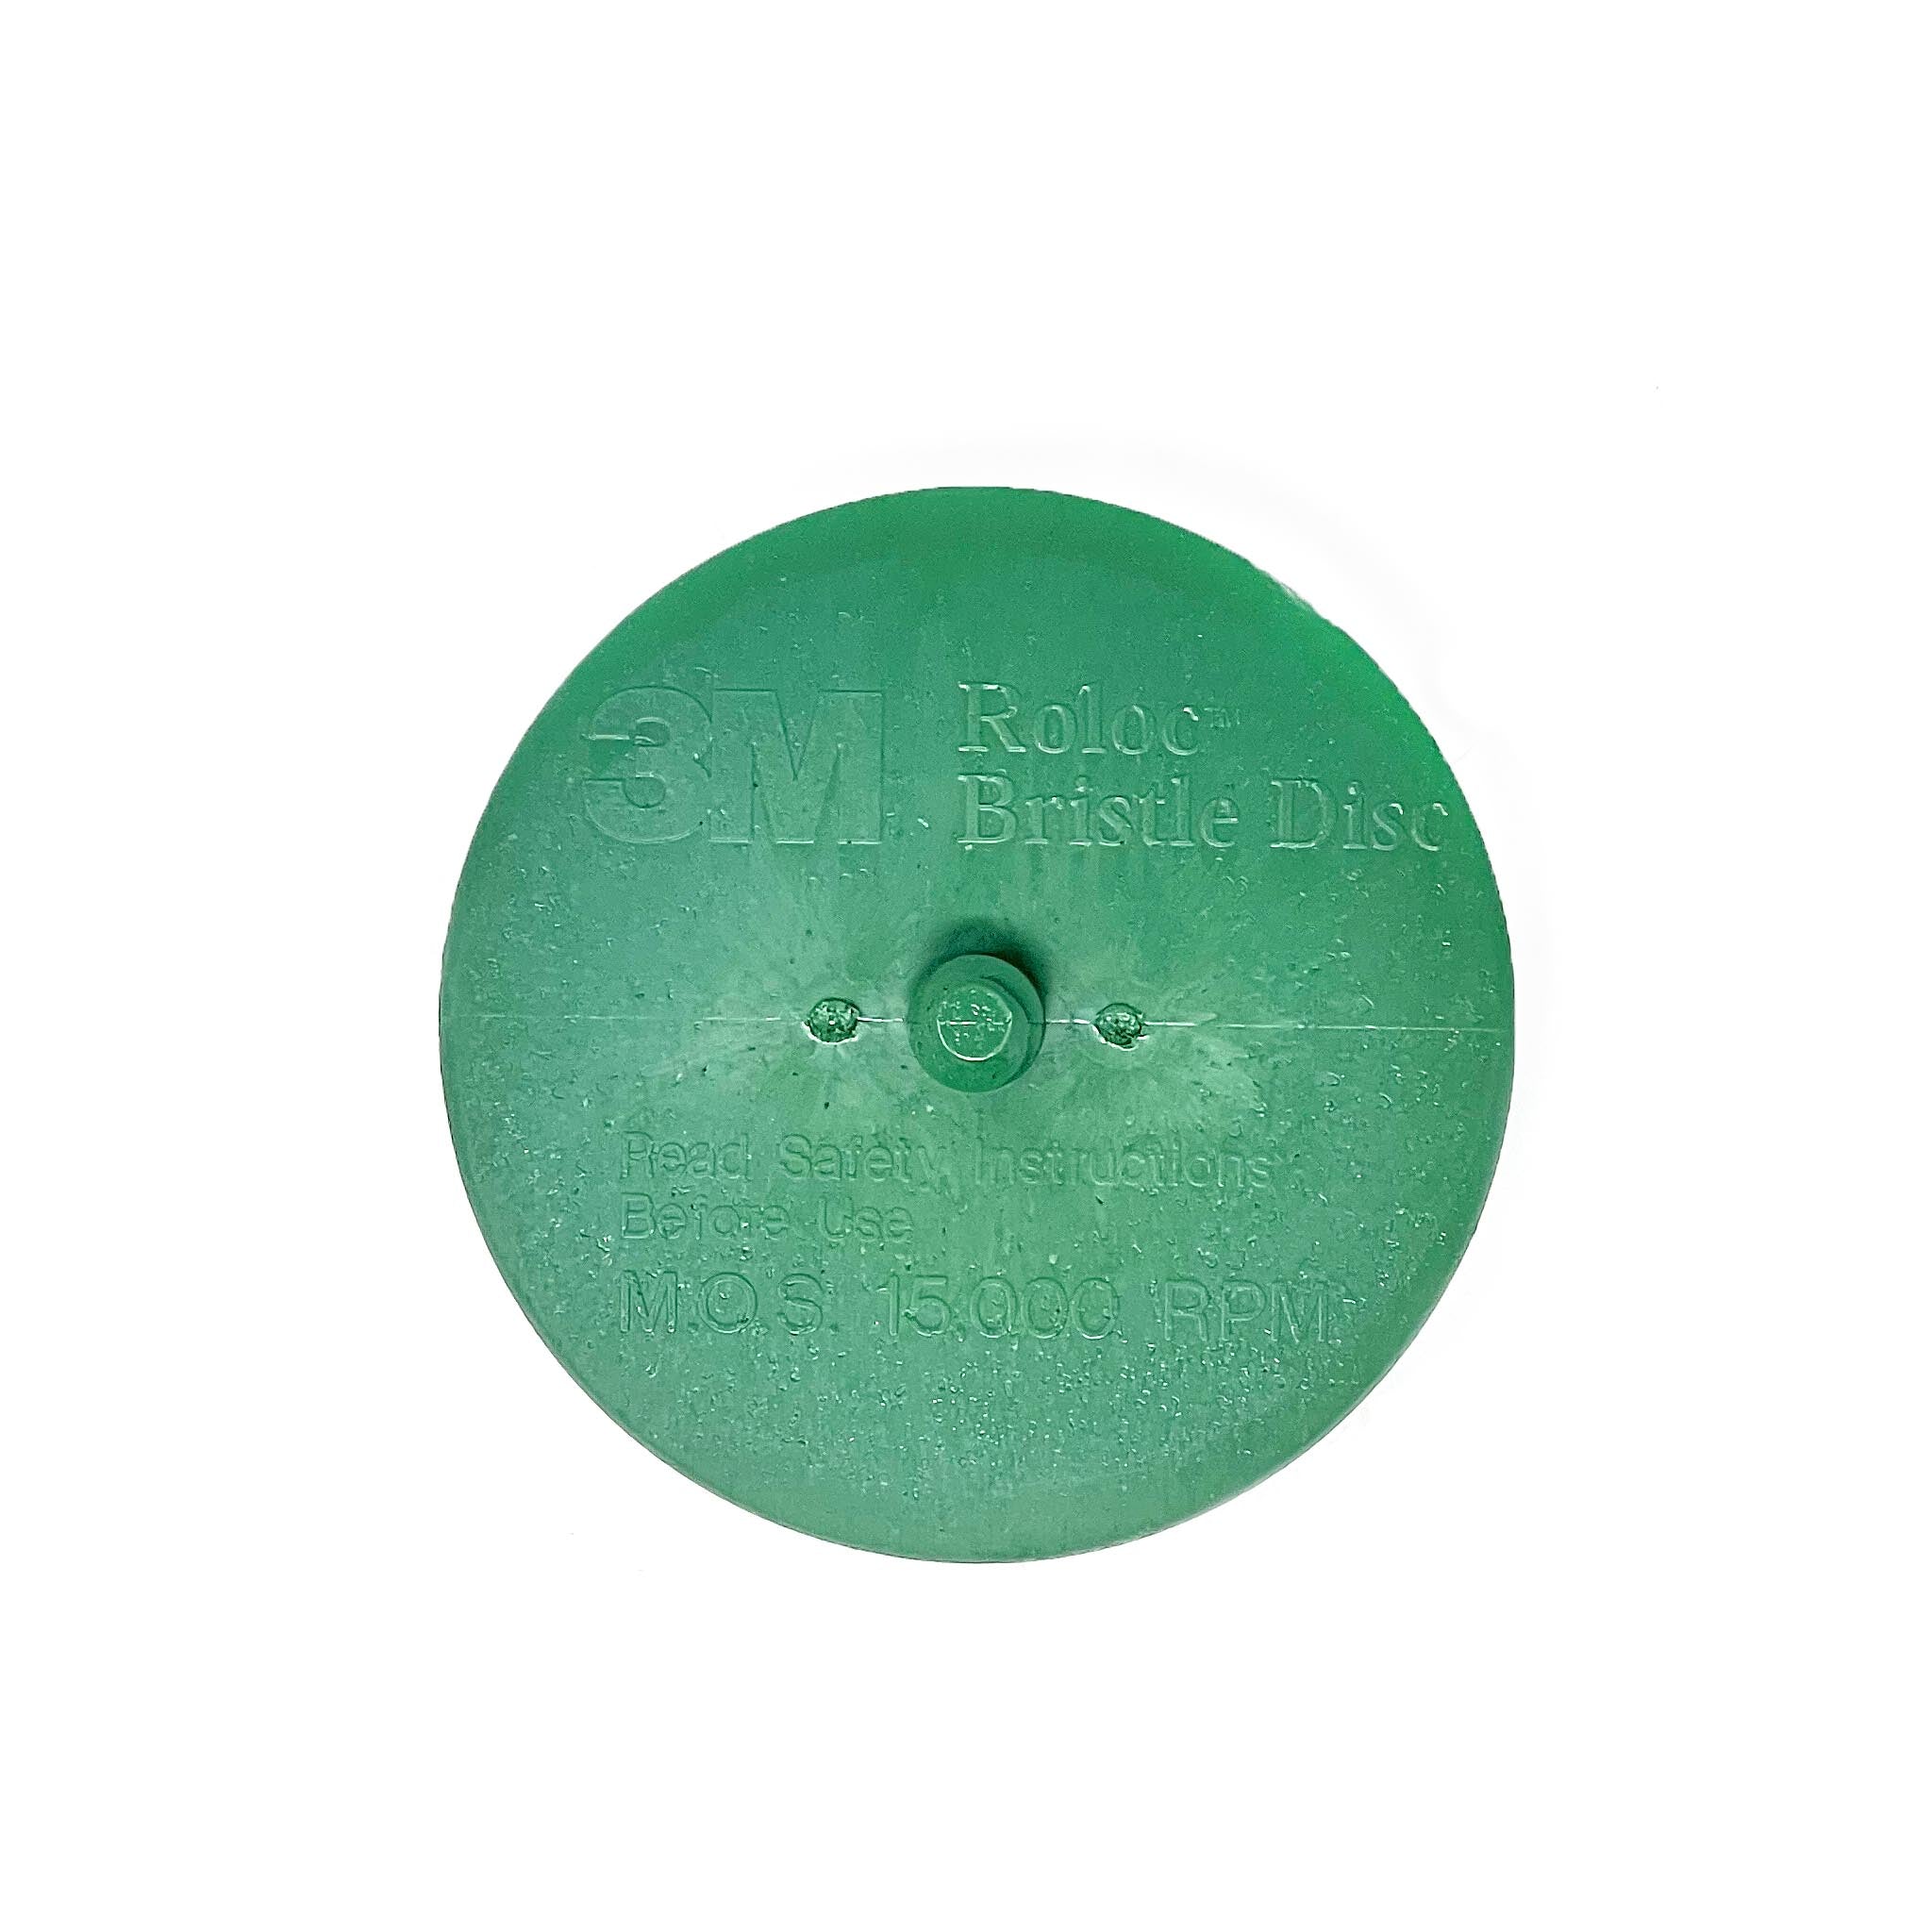 Scotch-Brite Roloc Bristle Disc 07526, 3 in x 5/8 Tapered Coarse, 10/Carton